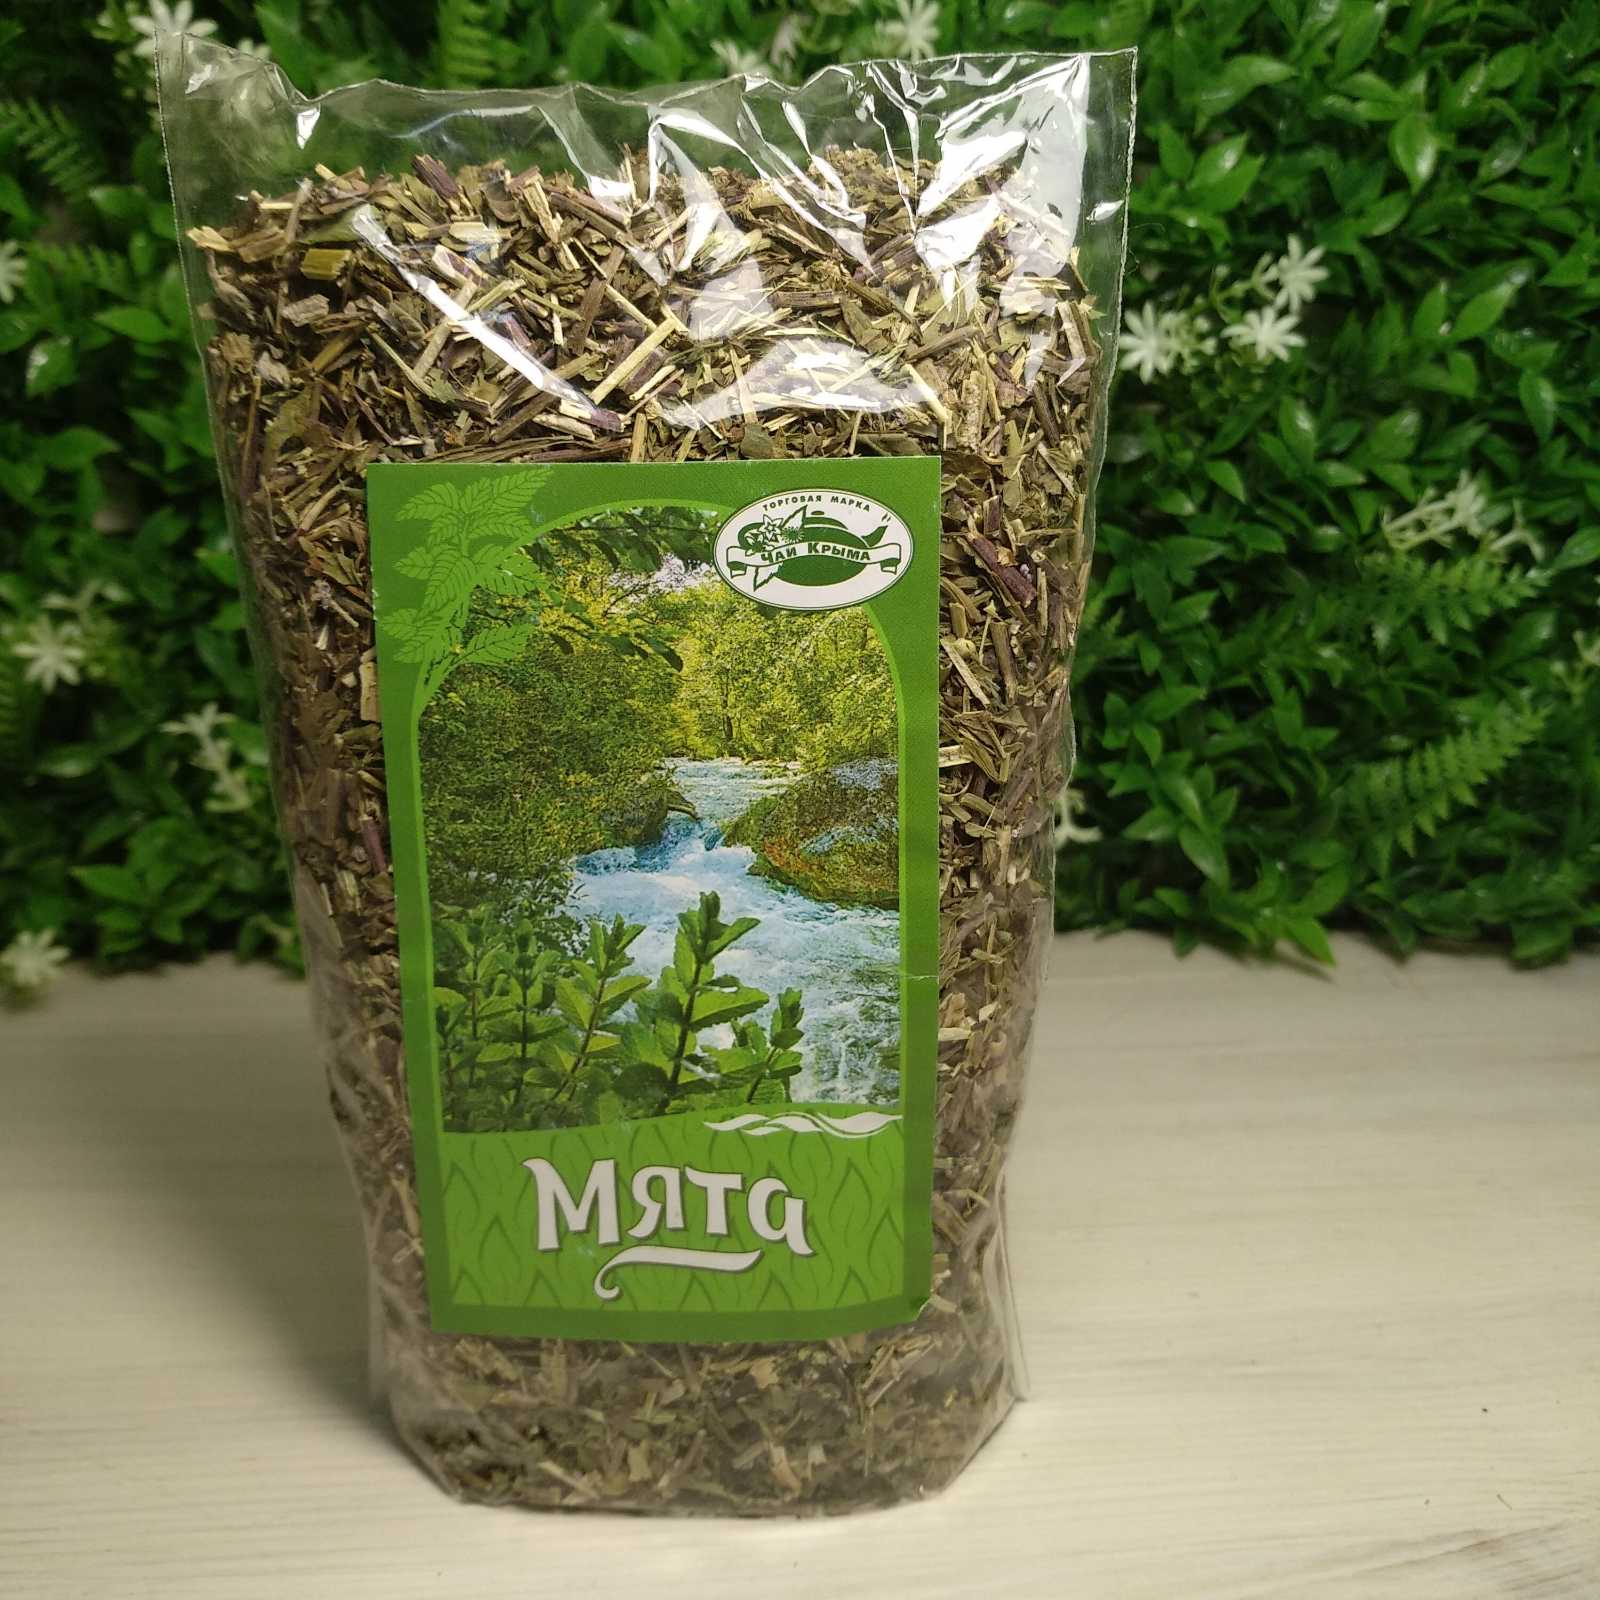 Крымский чай из трав